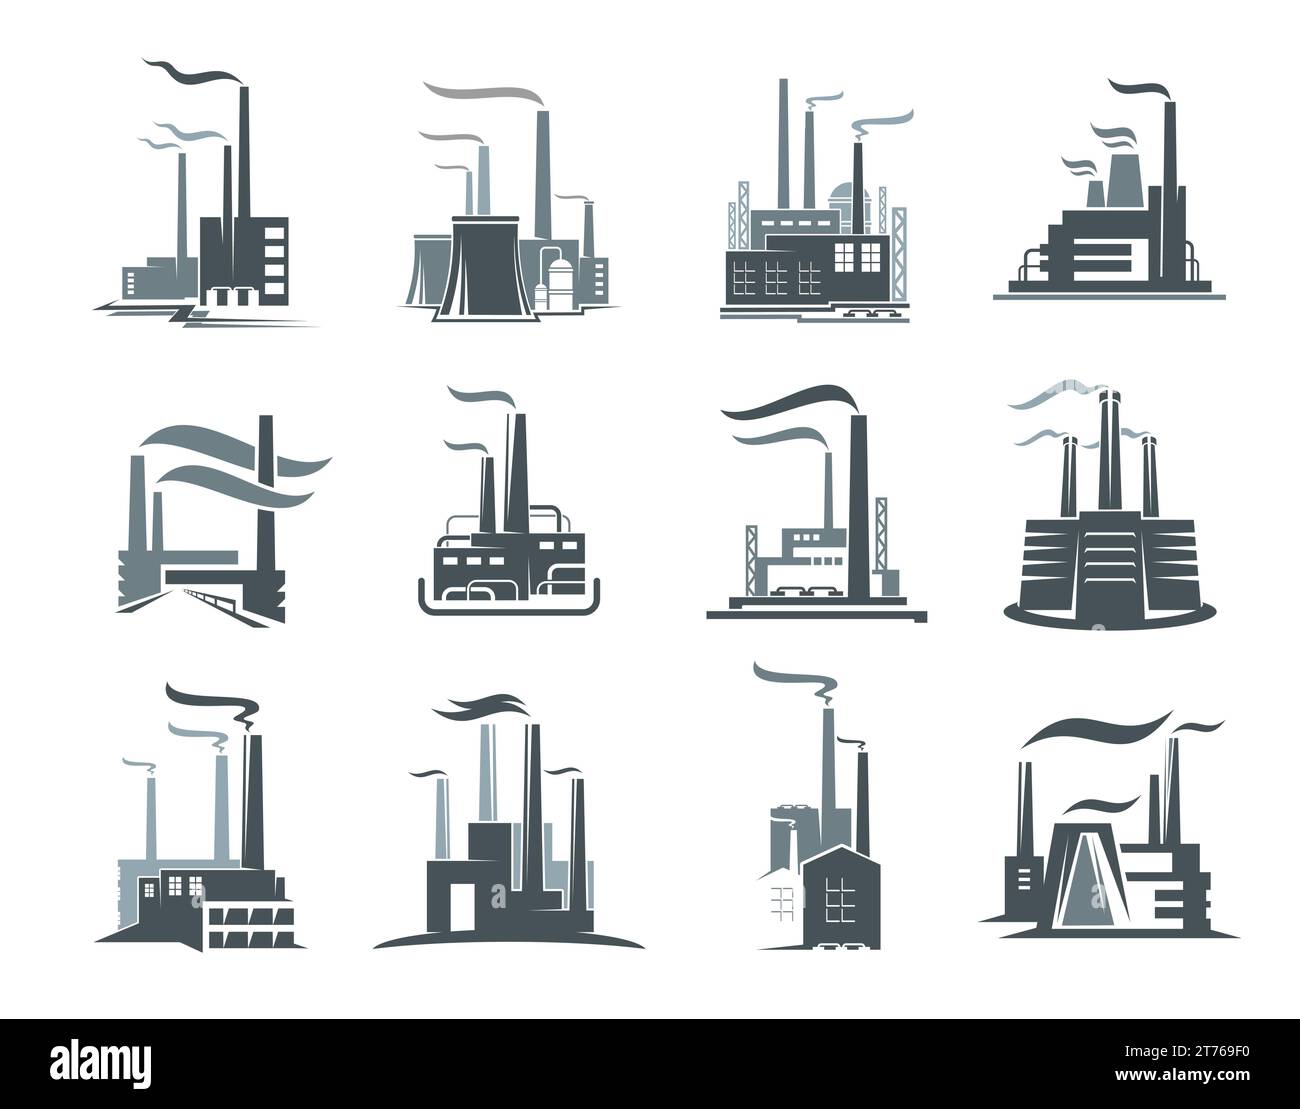 Set di icone per impianti industriali o di fabbrica. Edifici di centrali elettriche vettoriali, fabbriche o stazioni nucleari dell'industria chimica, energetica, petrolifera e delle raffinerie di gas. Sagome di edifici industriali con fumo, tubi Illustrazione Vettoriale